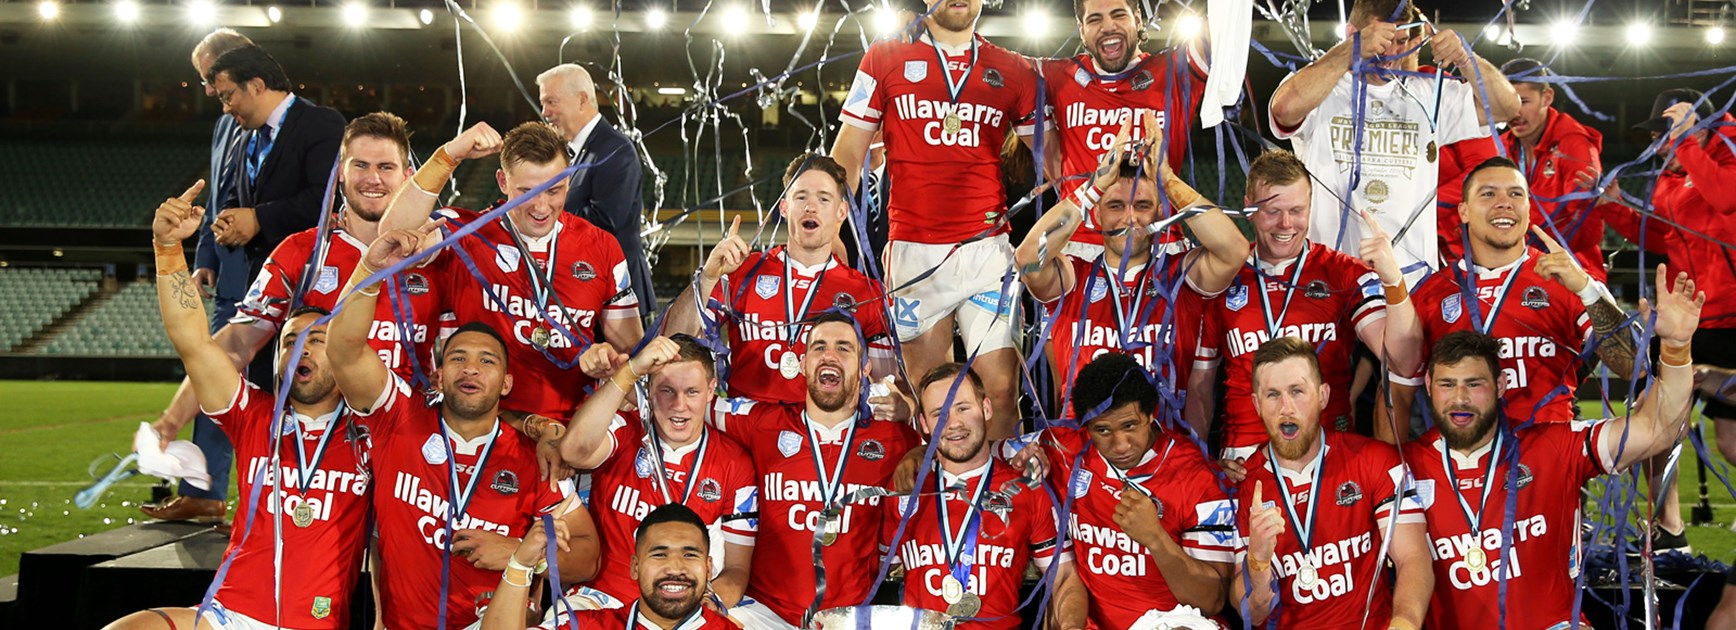 The Illawarra Cutters celebrate winning the Intrust Super Premiership.